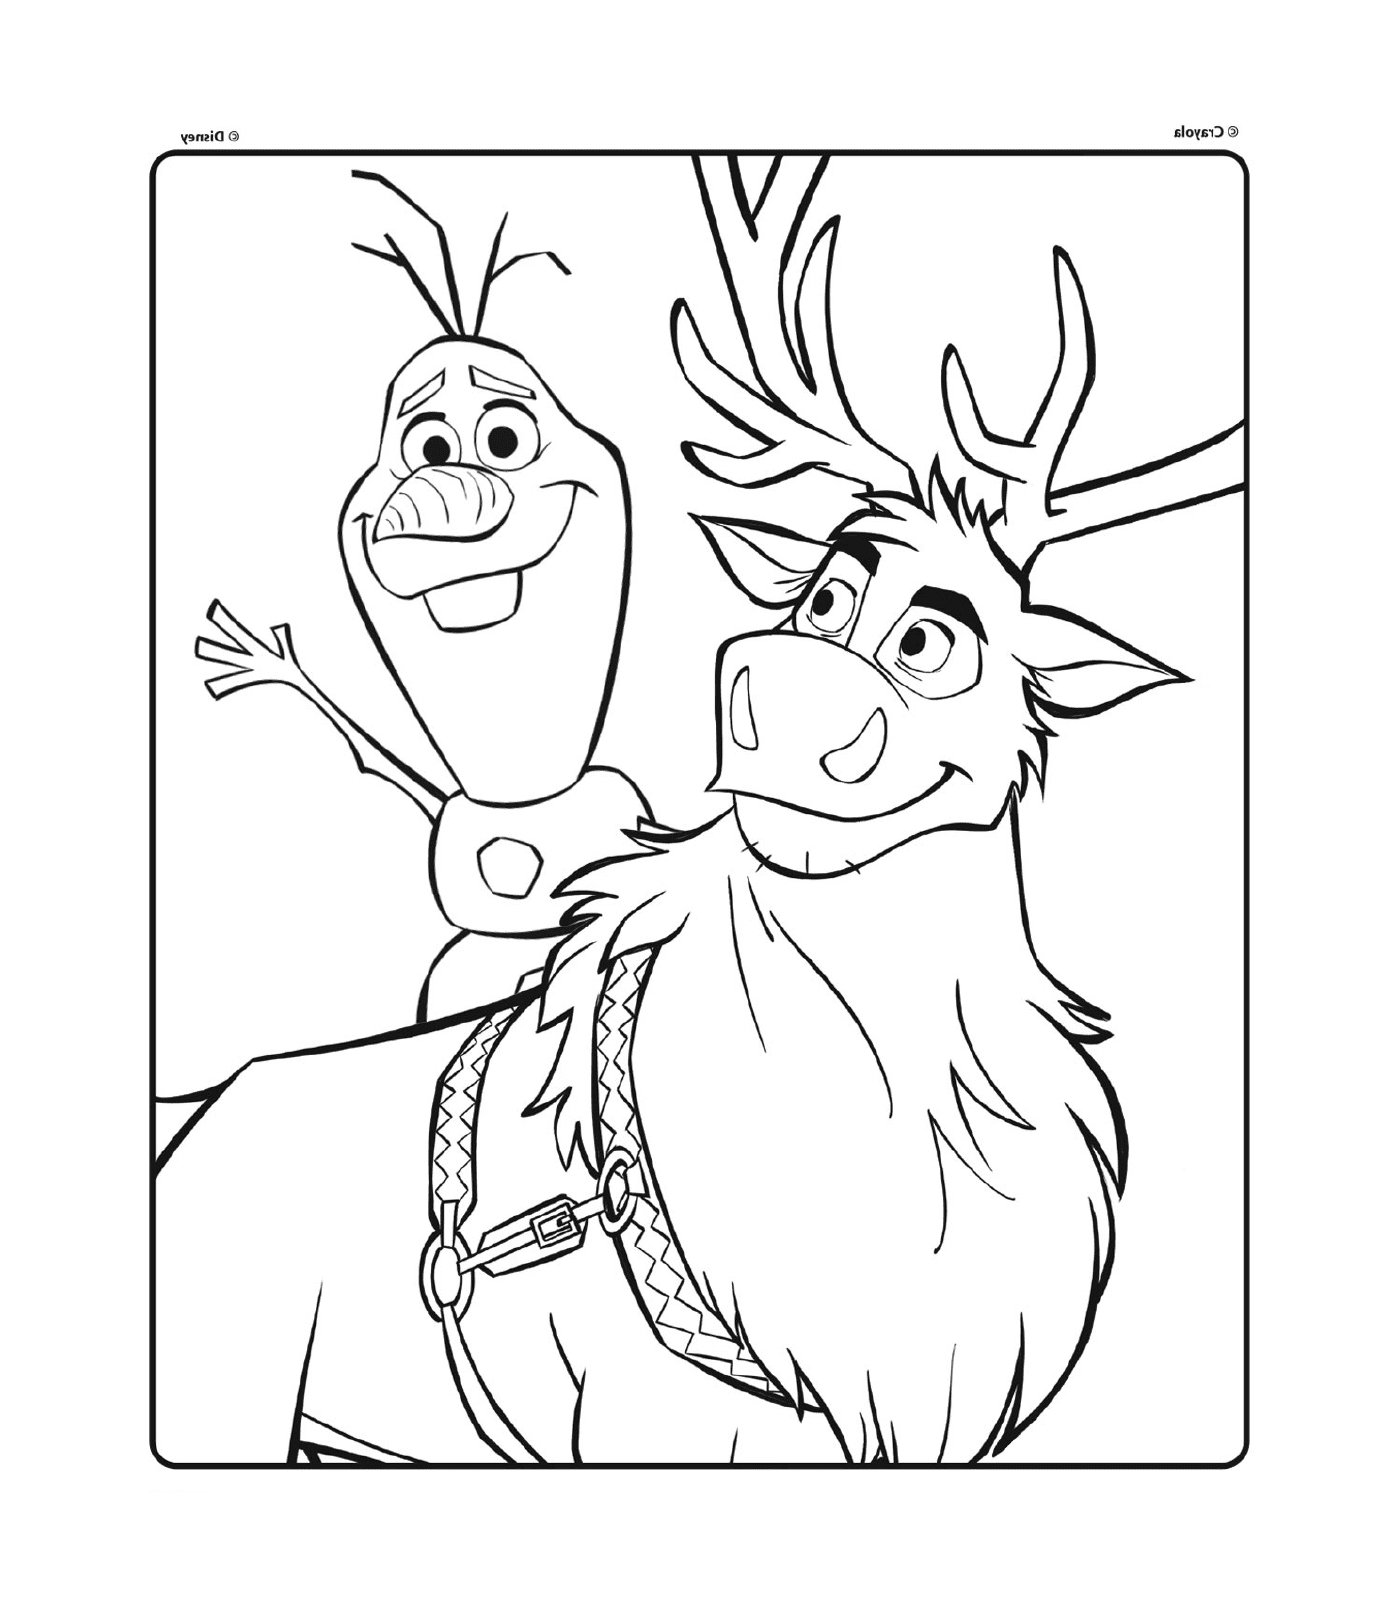  Olaf y Sven de Disney The Snow Queen 2 